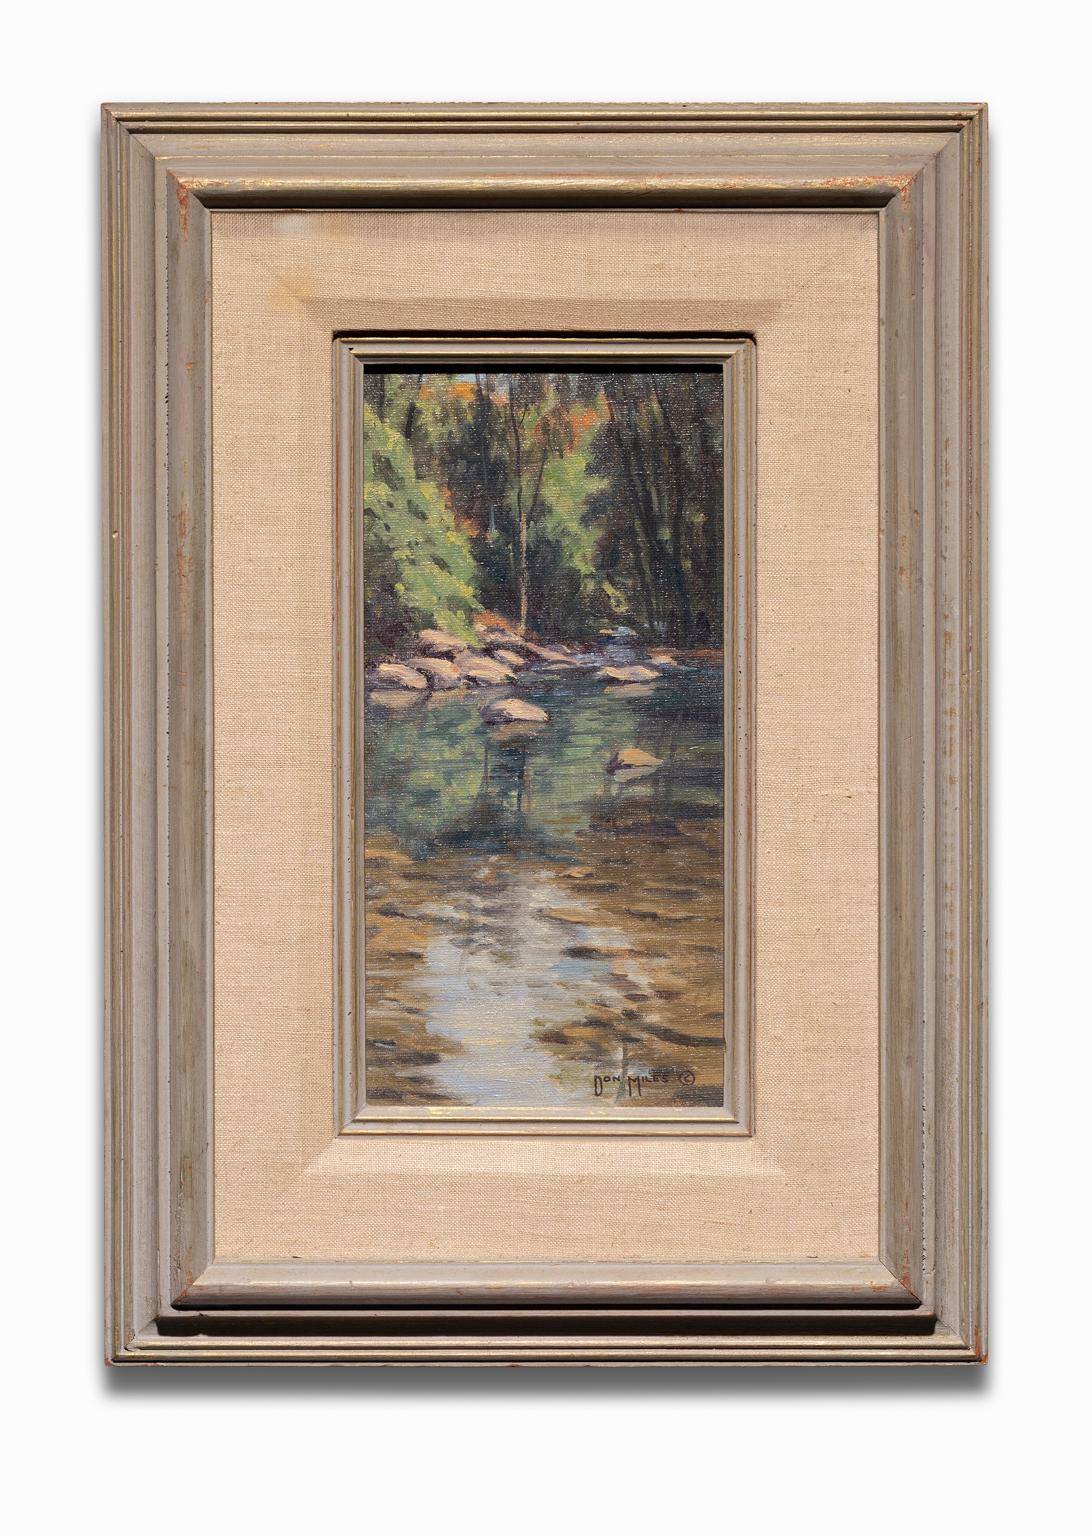 Cette peinture de paysage de Don Miles est intitulée "Oak Creek No. 1" et représente ce qui semble être une partie du canyon d'Oak Creek, une partie de la forêt nationale de Coconino dans le nord de l'Arizona. L'œuvre se trouve dans un grand cadre